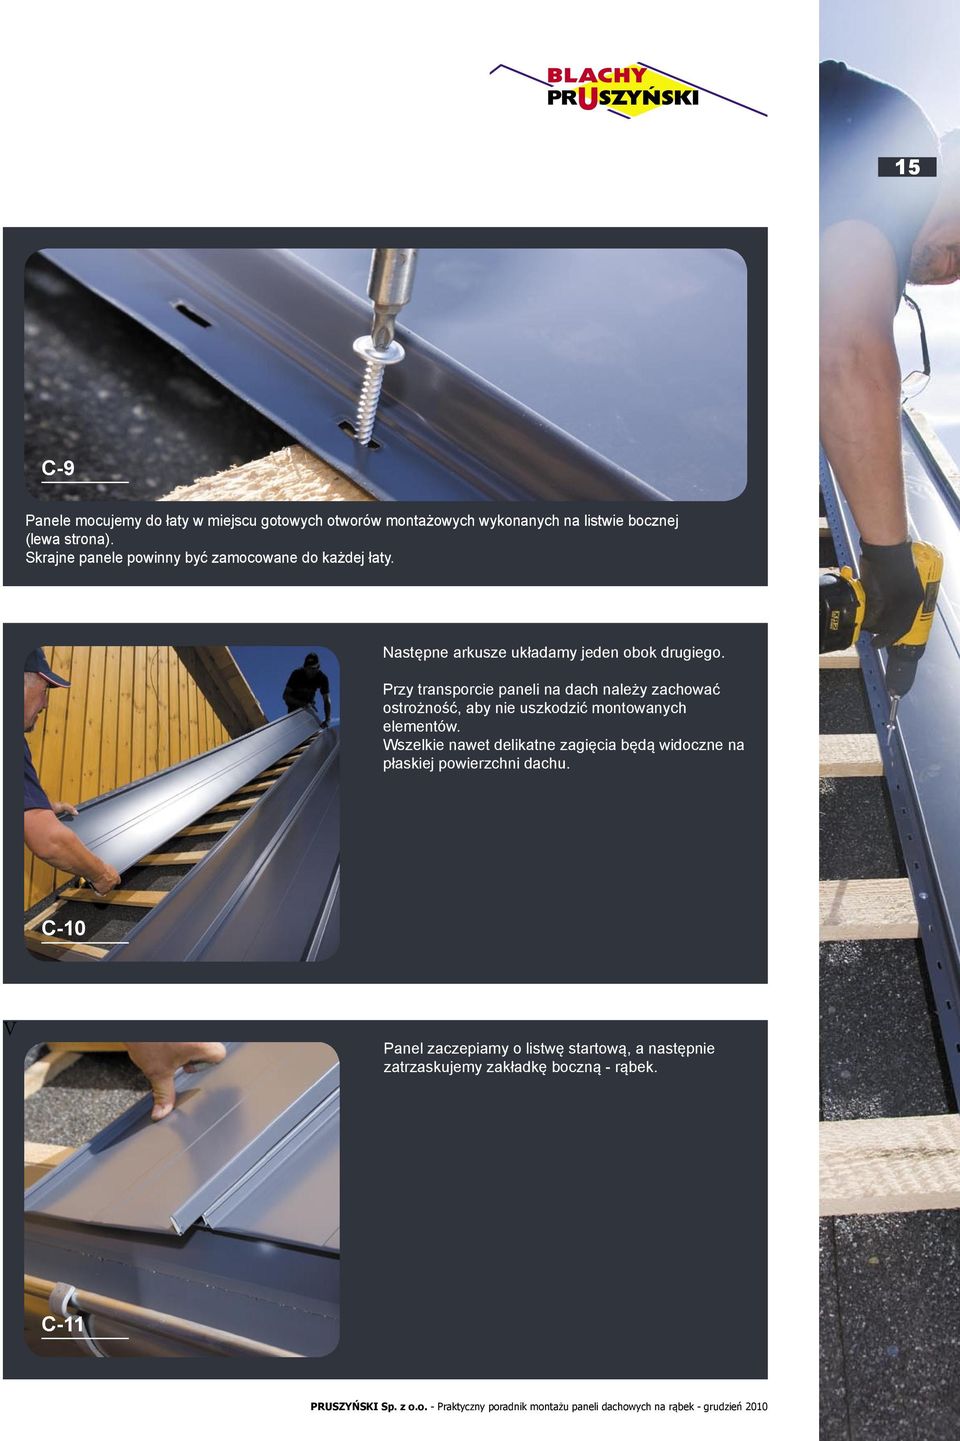 Przy transporcie paneli na dach należy zachować ostrożność, aby nie uszkodzić montowanych elementów.